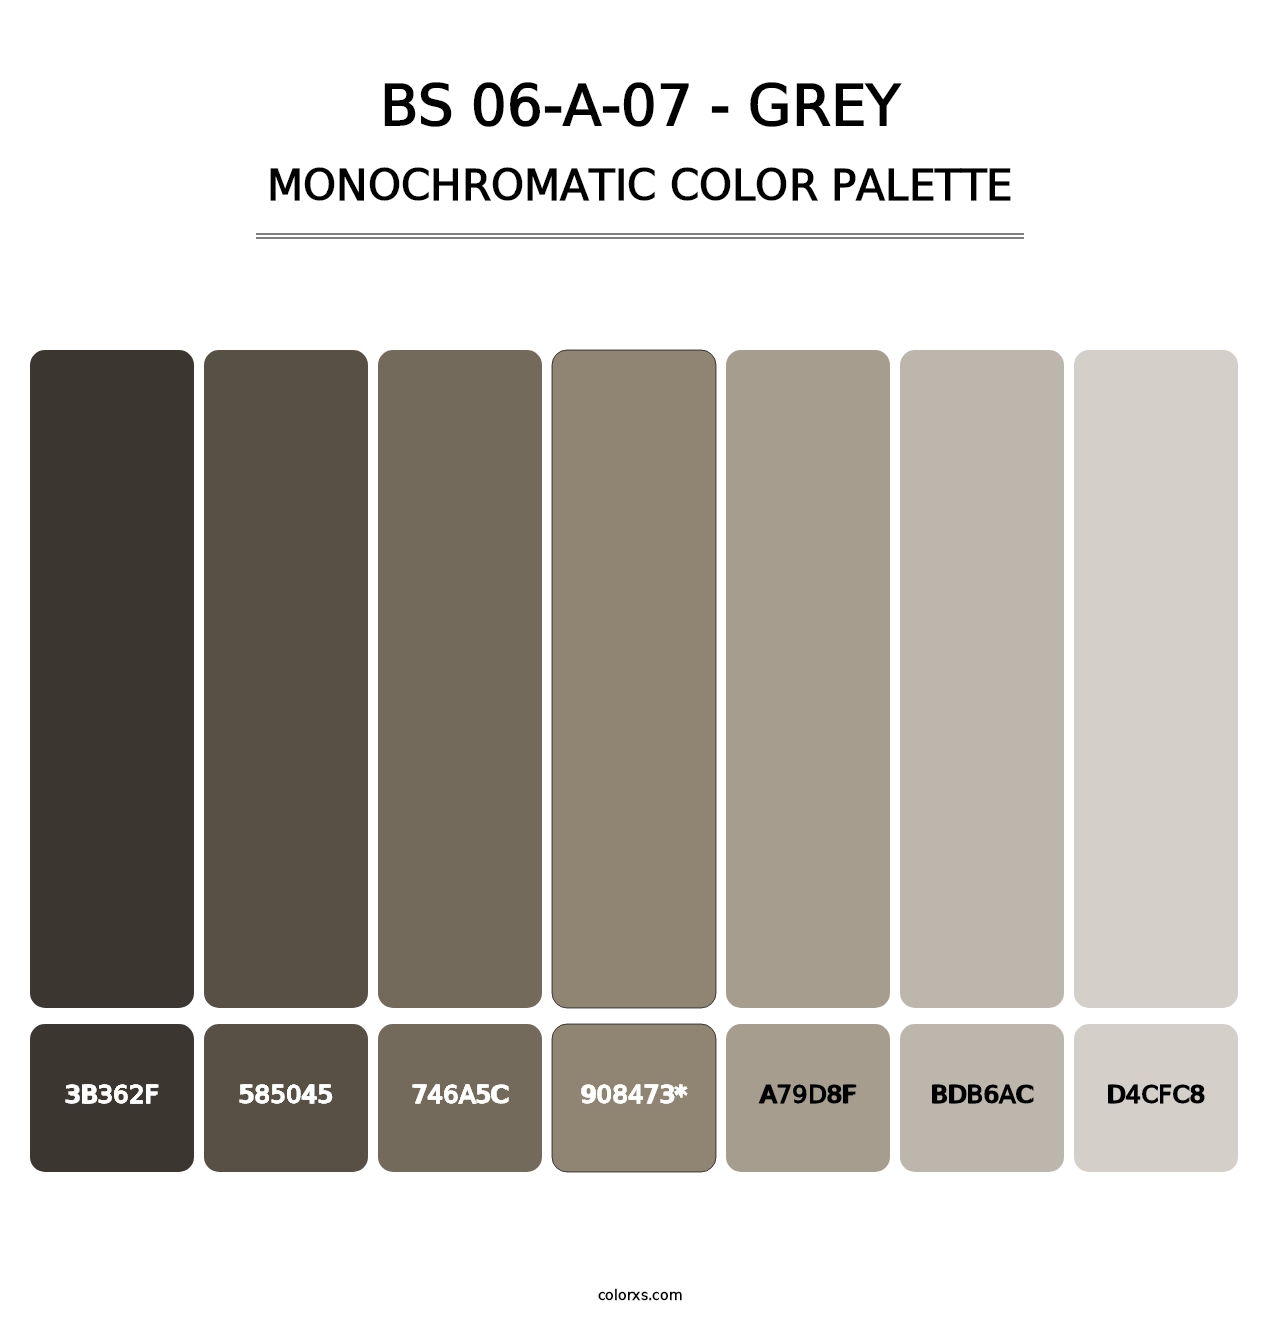 BS 06-A-07 - Grey - Monochromatic Color Palette